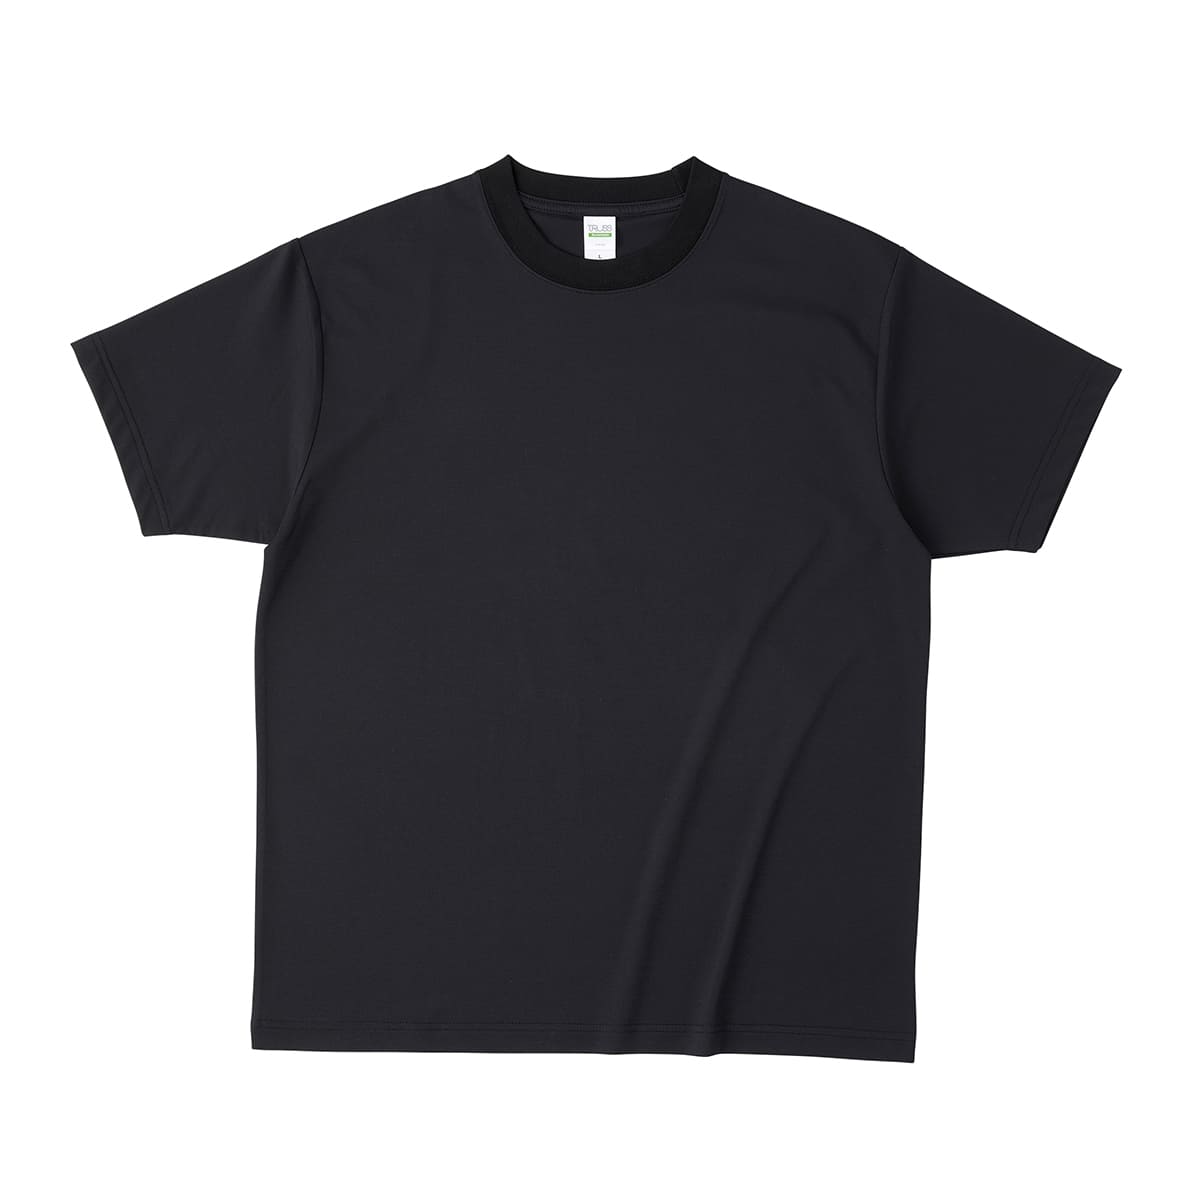 Tシャツ メンズ 無地 TRUSS トラス リサイクルポリエステルTシャツ RPT-925 男女兼用...